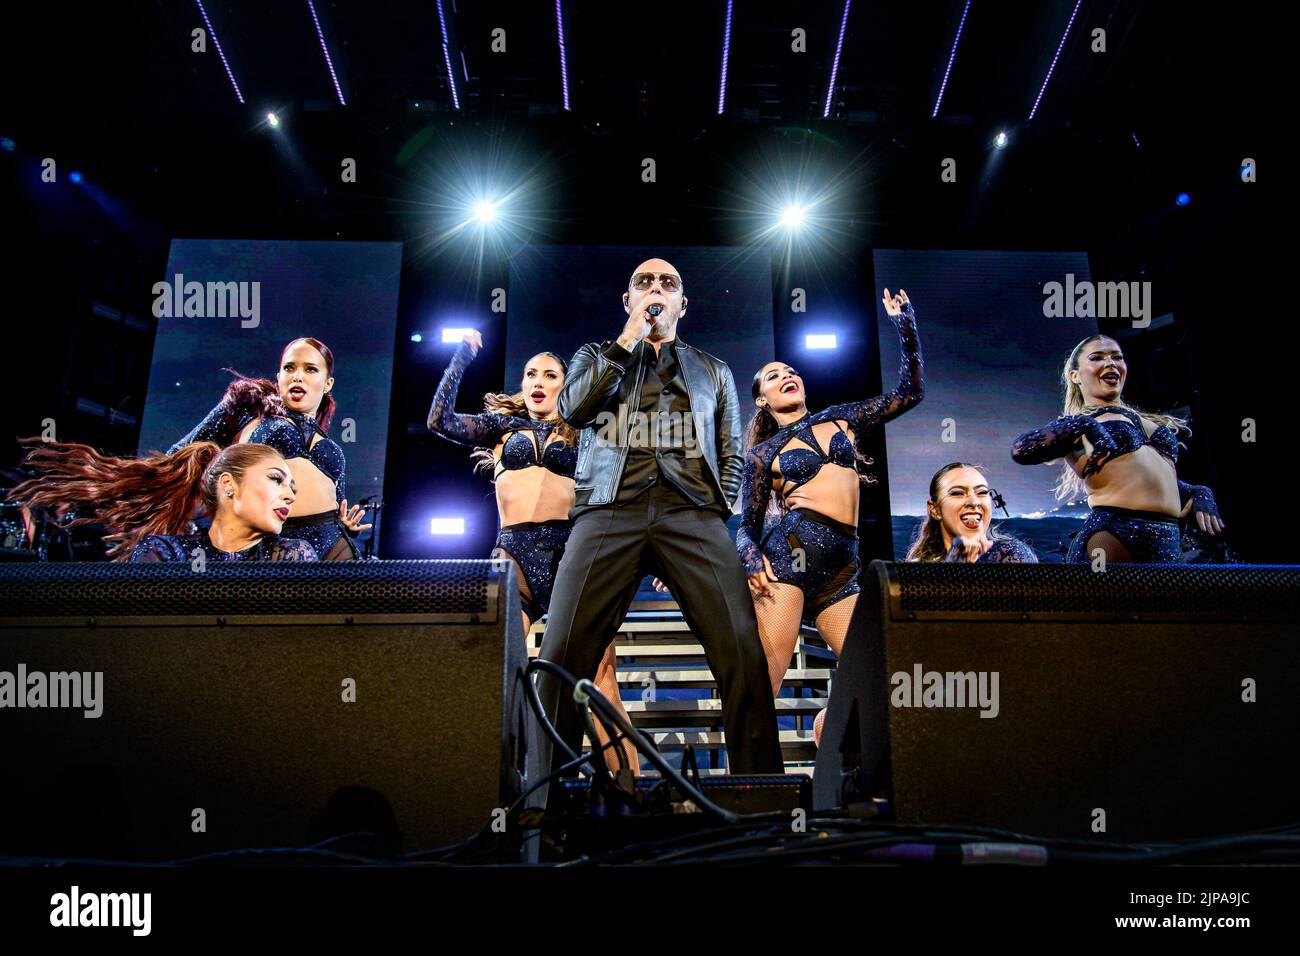 Der US-amerikanische Rapper und Sänger Armando Christian Pérez, der professionell unter seinem Künstlernamen Pitbull bekannt ist, tritt bei einer ausverkauften Show auf der Budweiser Stage in Toronto auf. Stockfoto